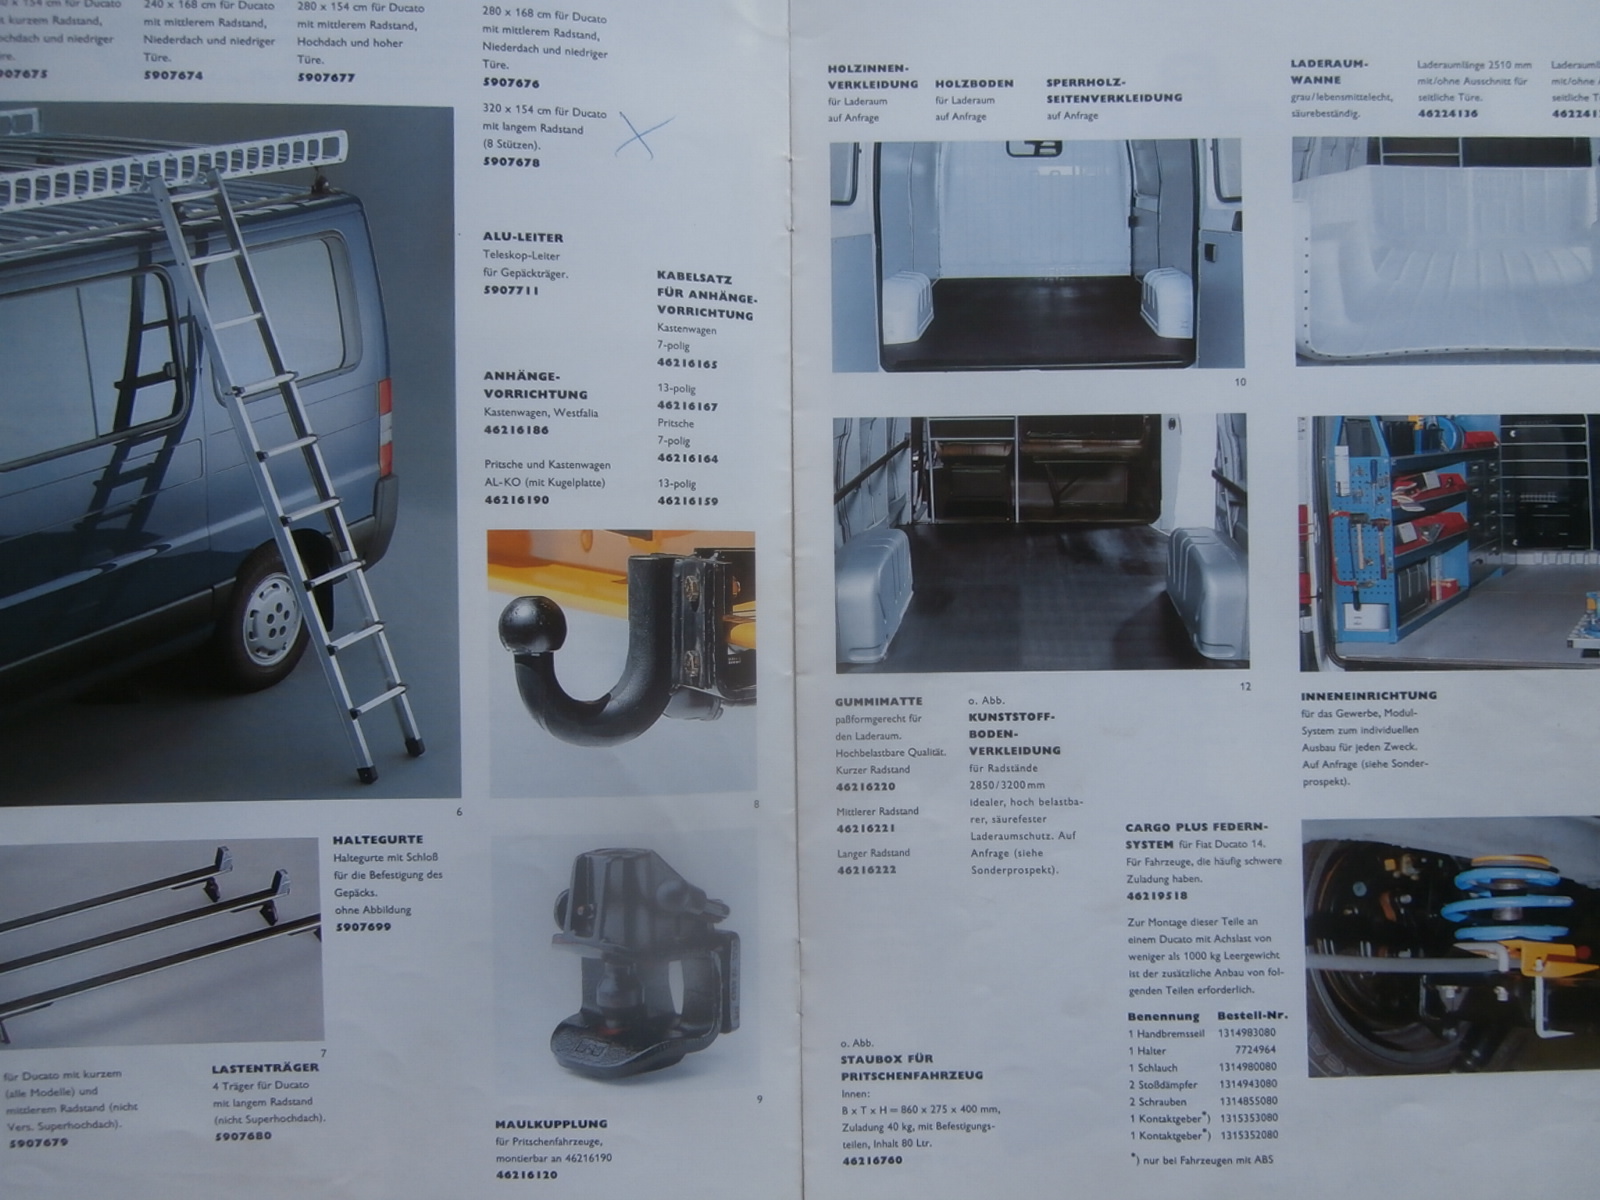 Druckausgabe Fiat Ducato Zubehör Katalog im Jahre 1995 : Autoliteratur Höpel